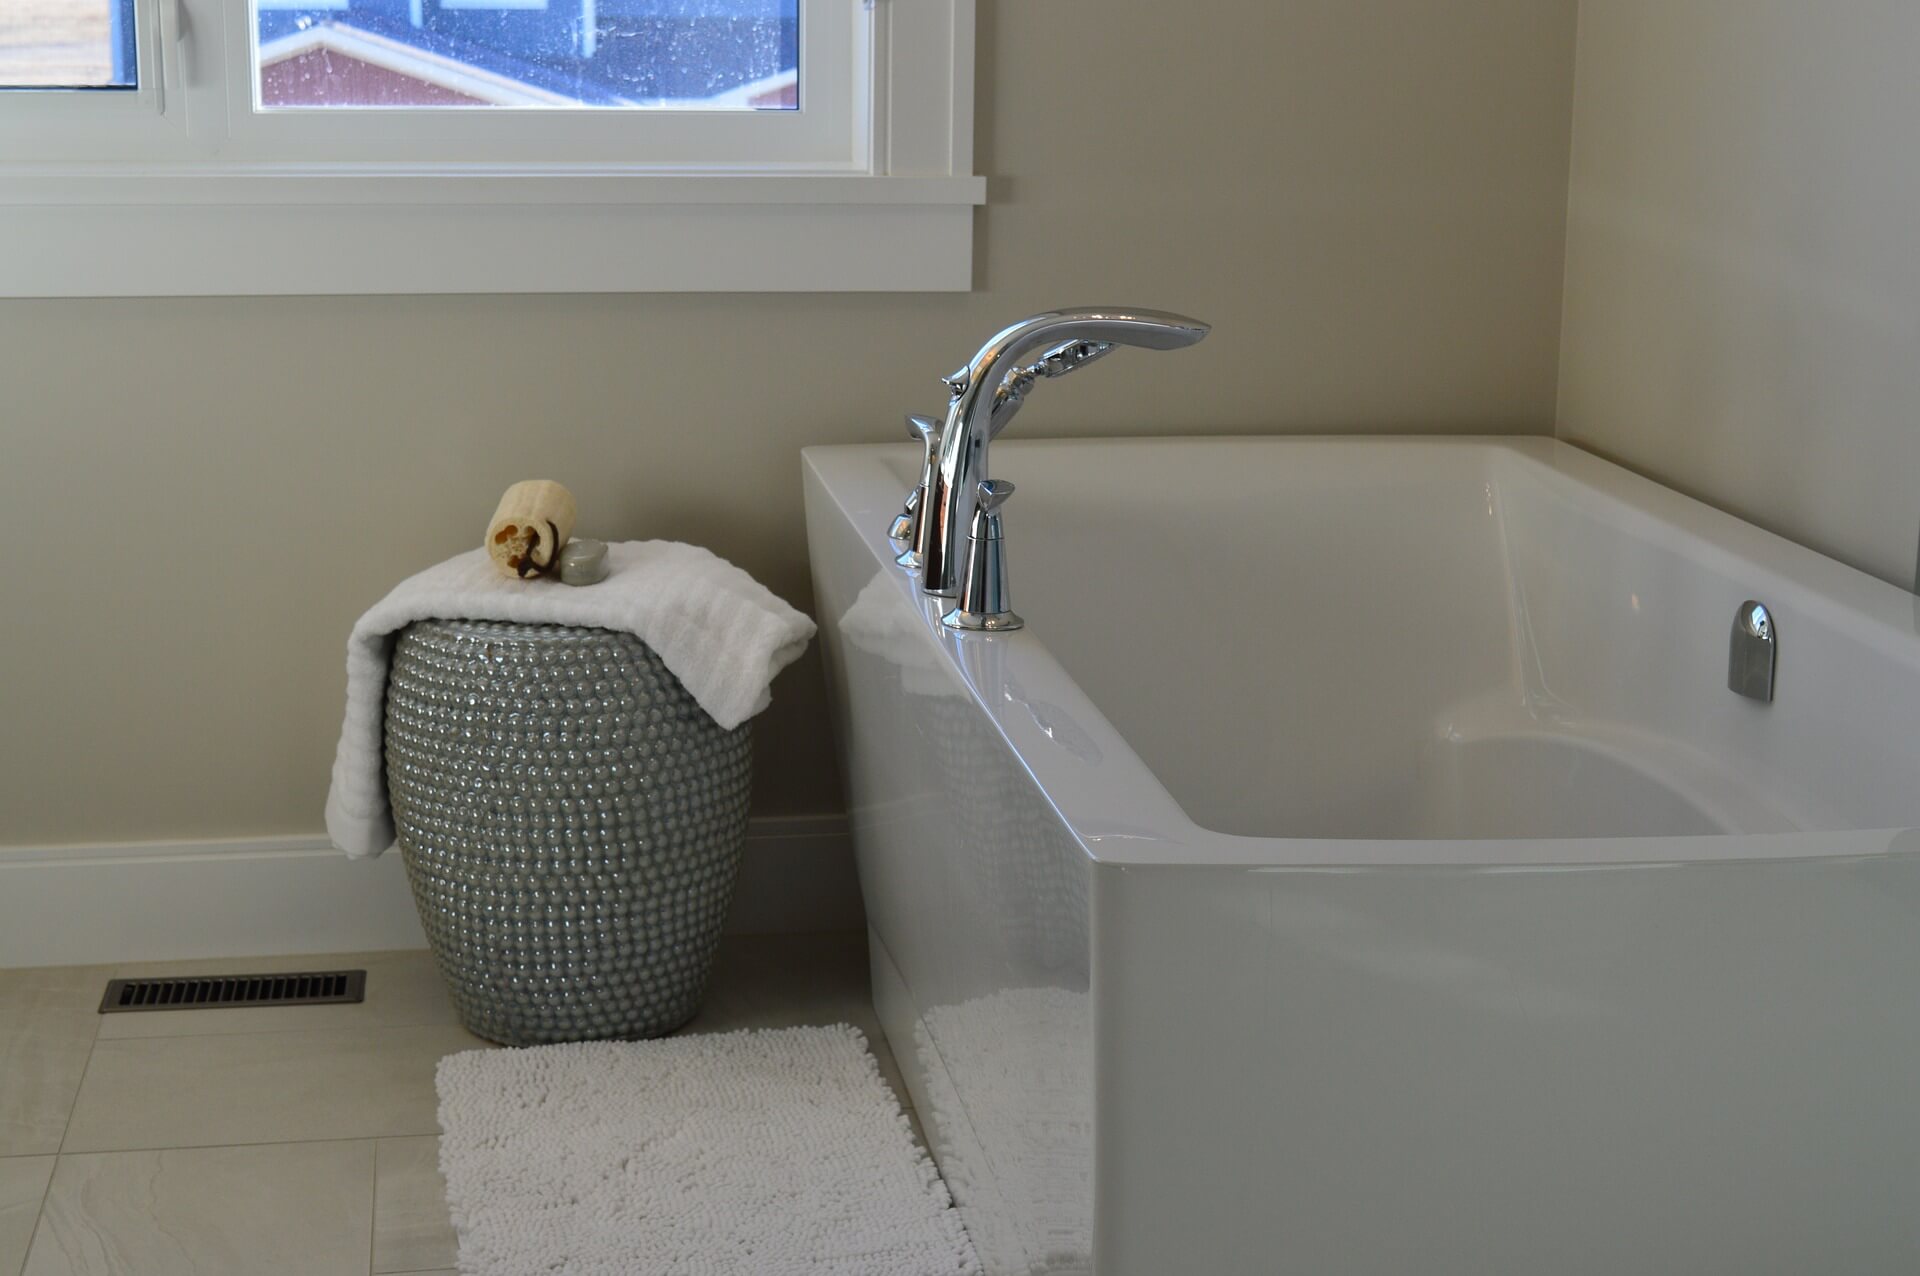 How to Clean Bathtub Stains - Best DIY Bathtub Cleaning Methods  eMop